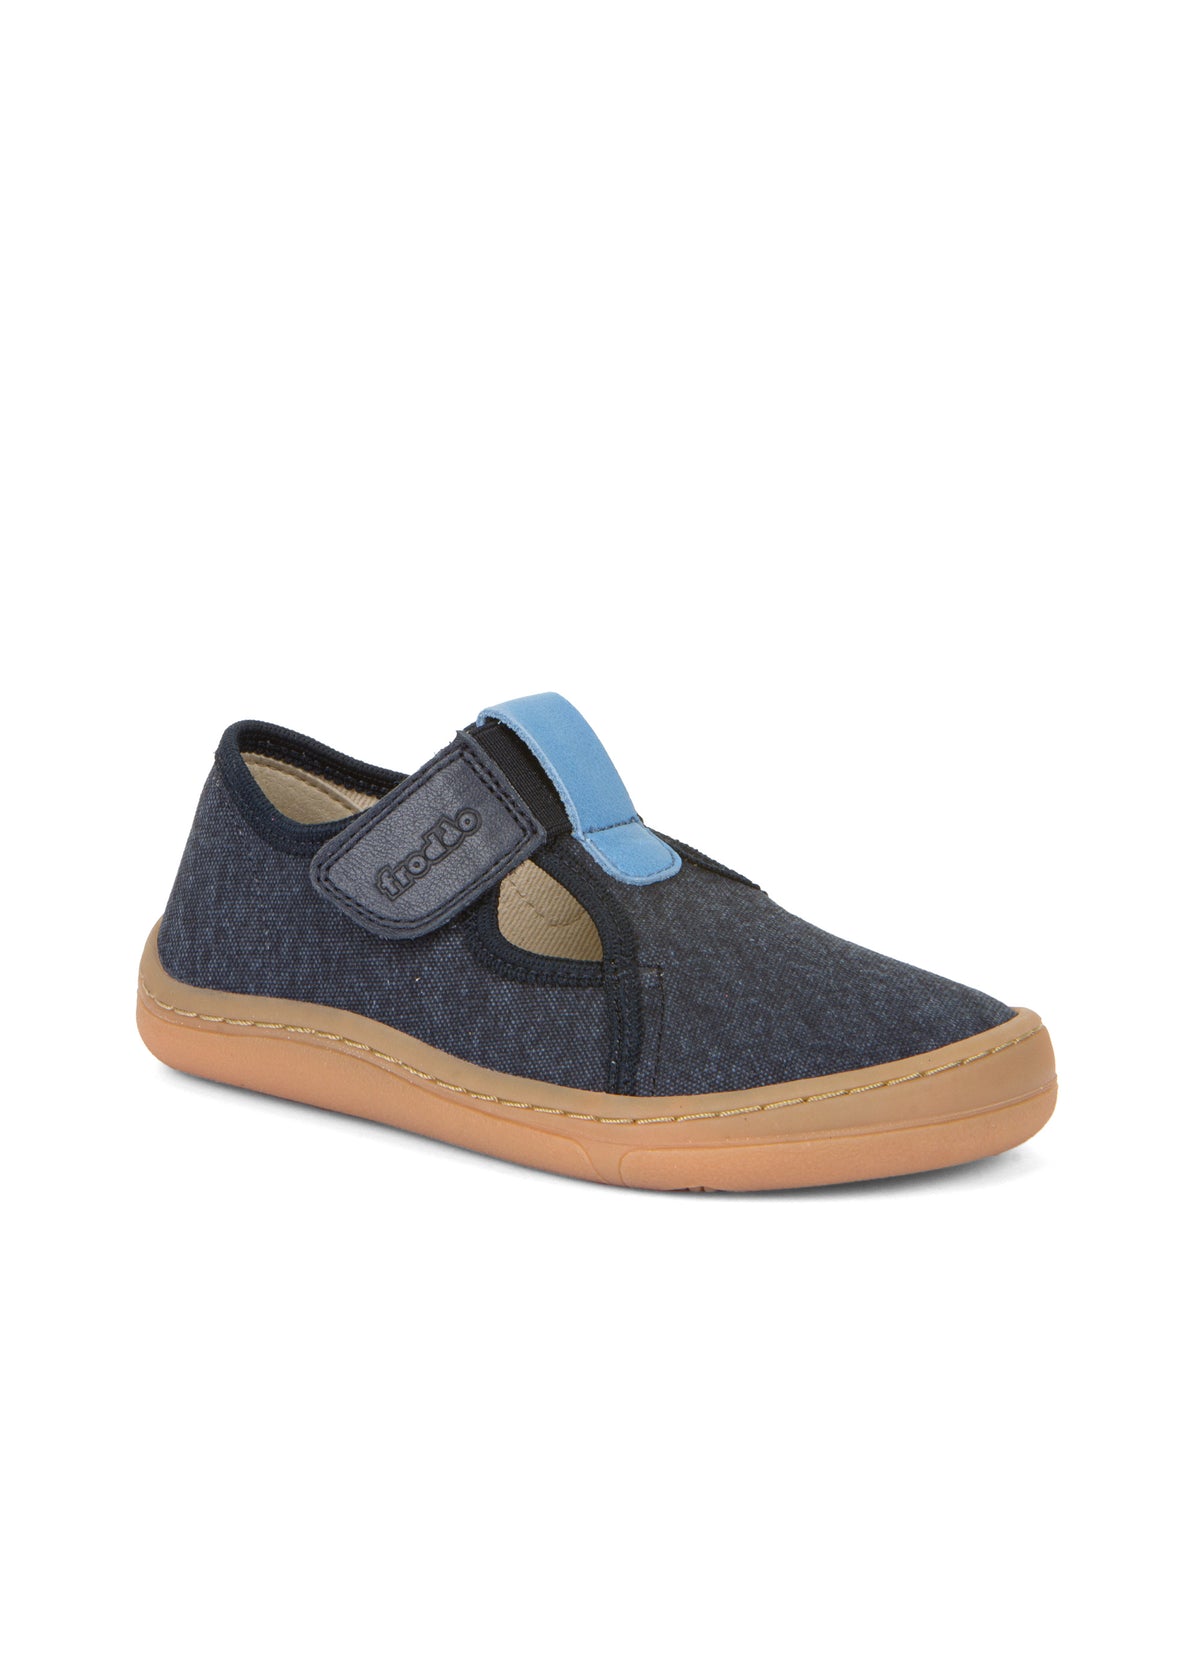 Children's barefoot shoes - dark blue, velcro fastening